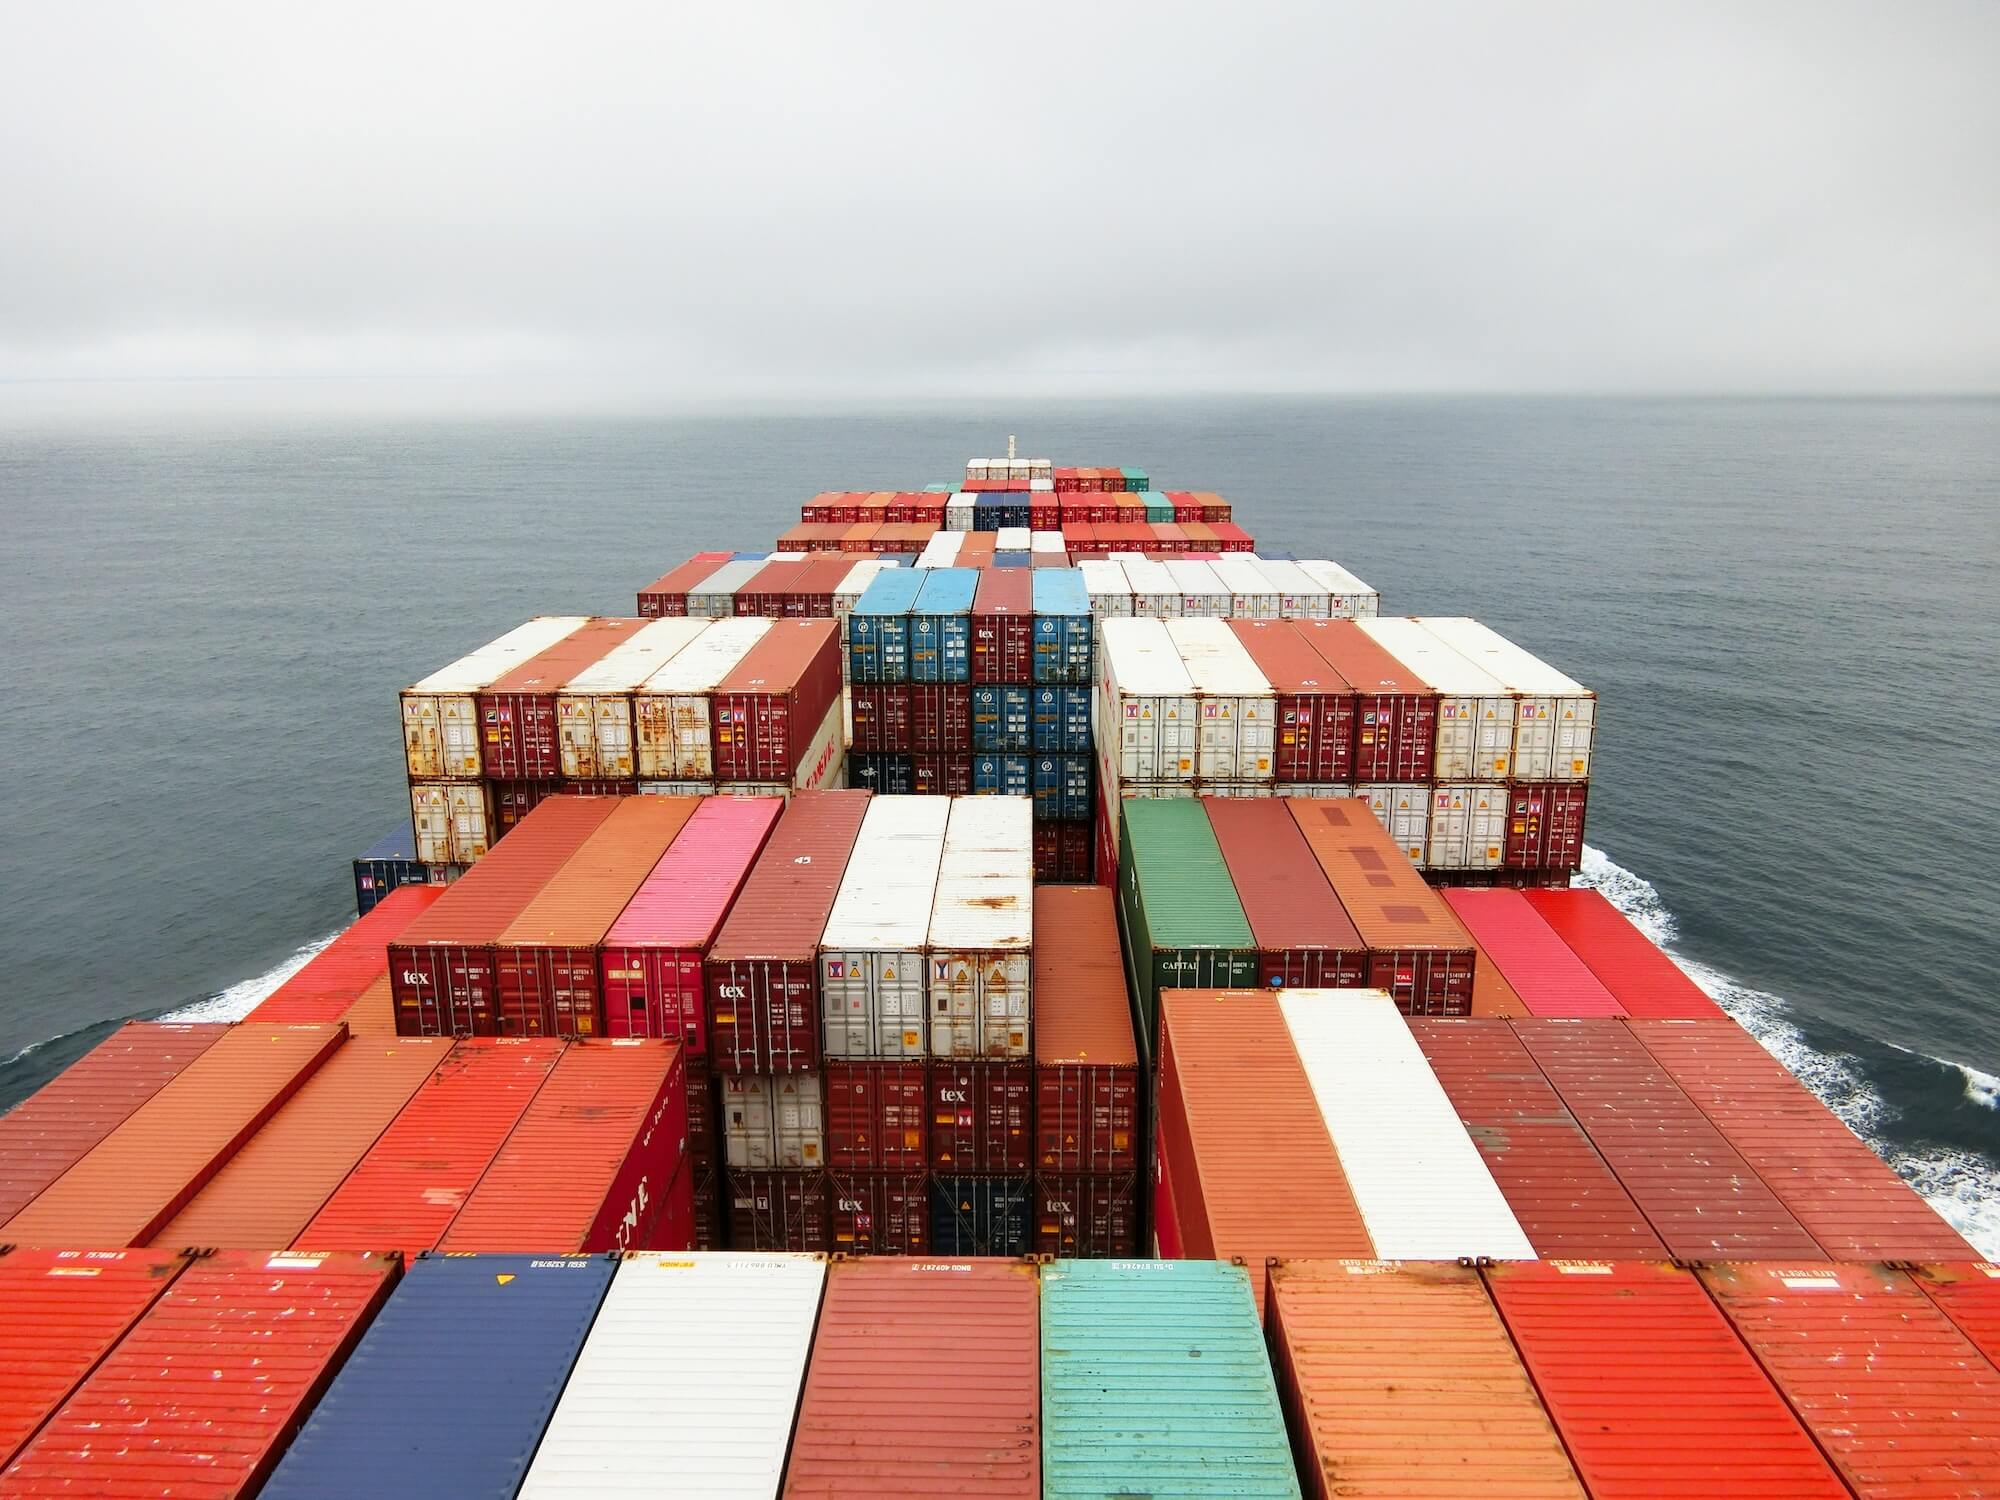 Bunte Container stapeln sich auf dem Deck eines FrachtschiffsFoto: Rinson Chory / unsplash.com